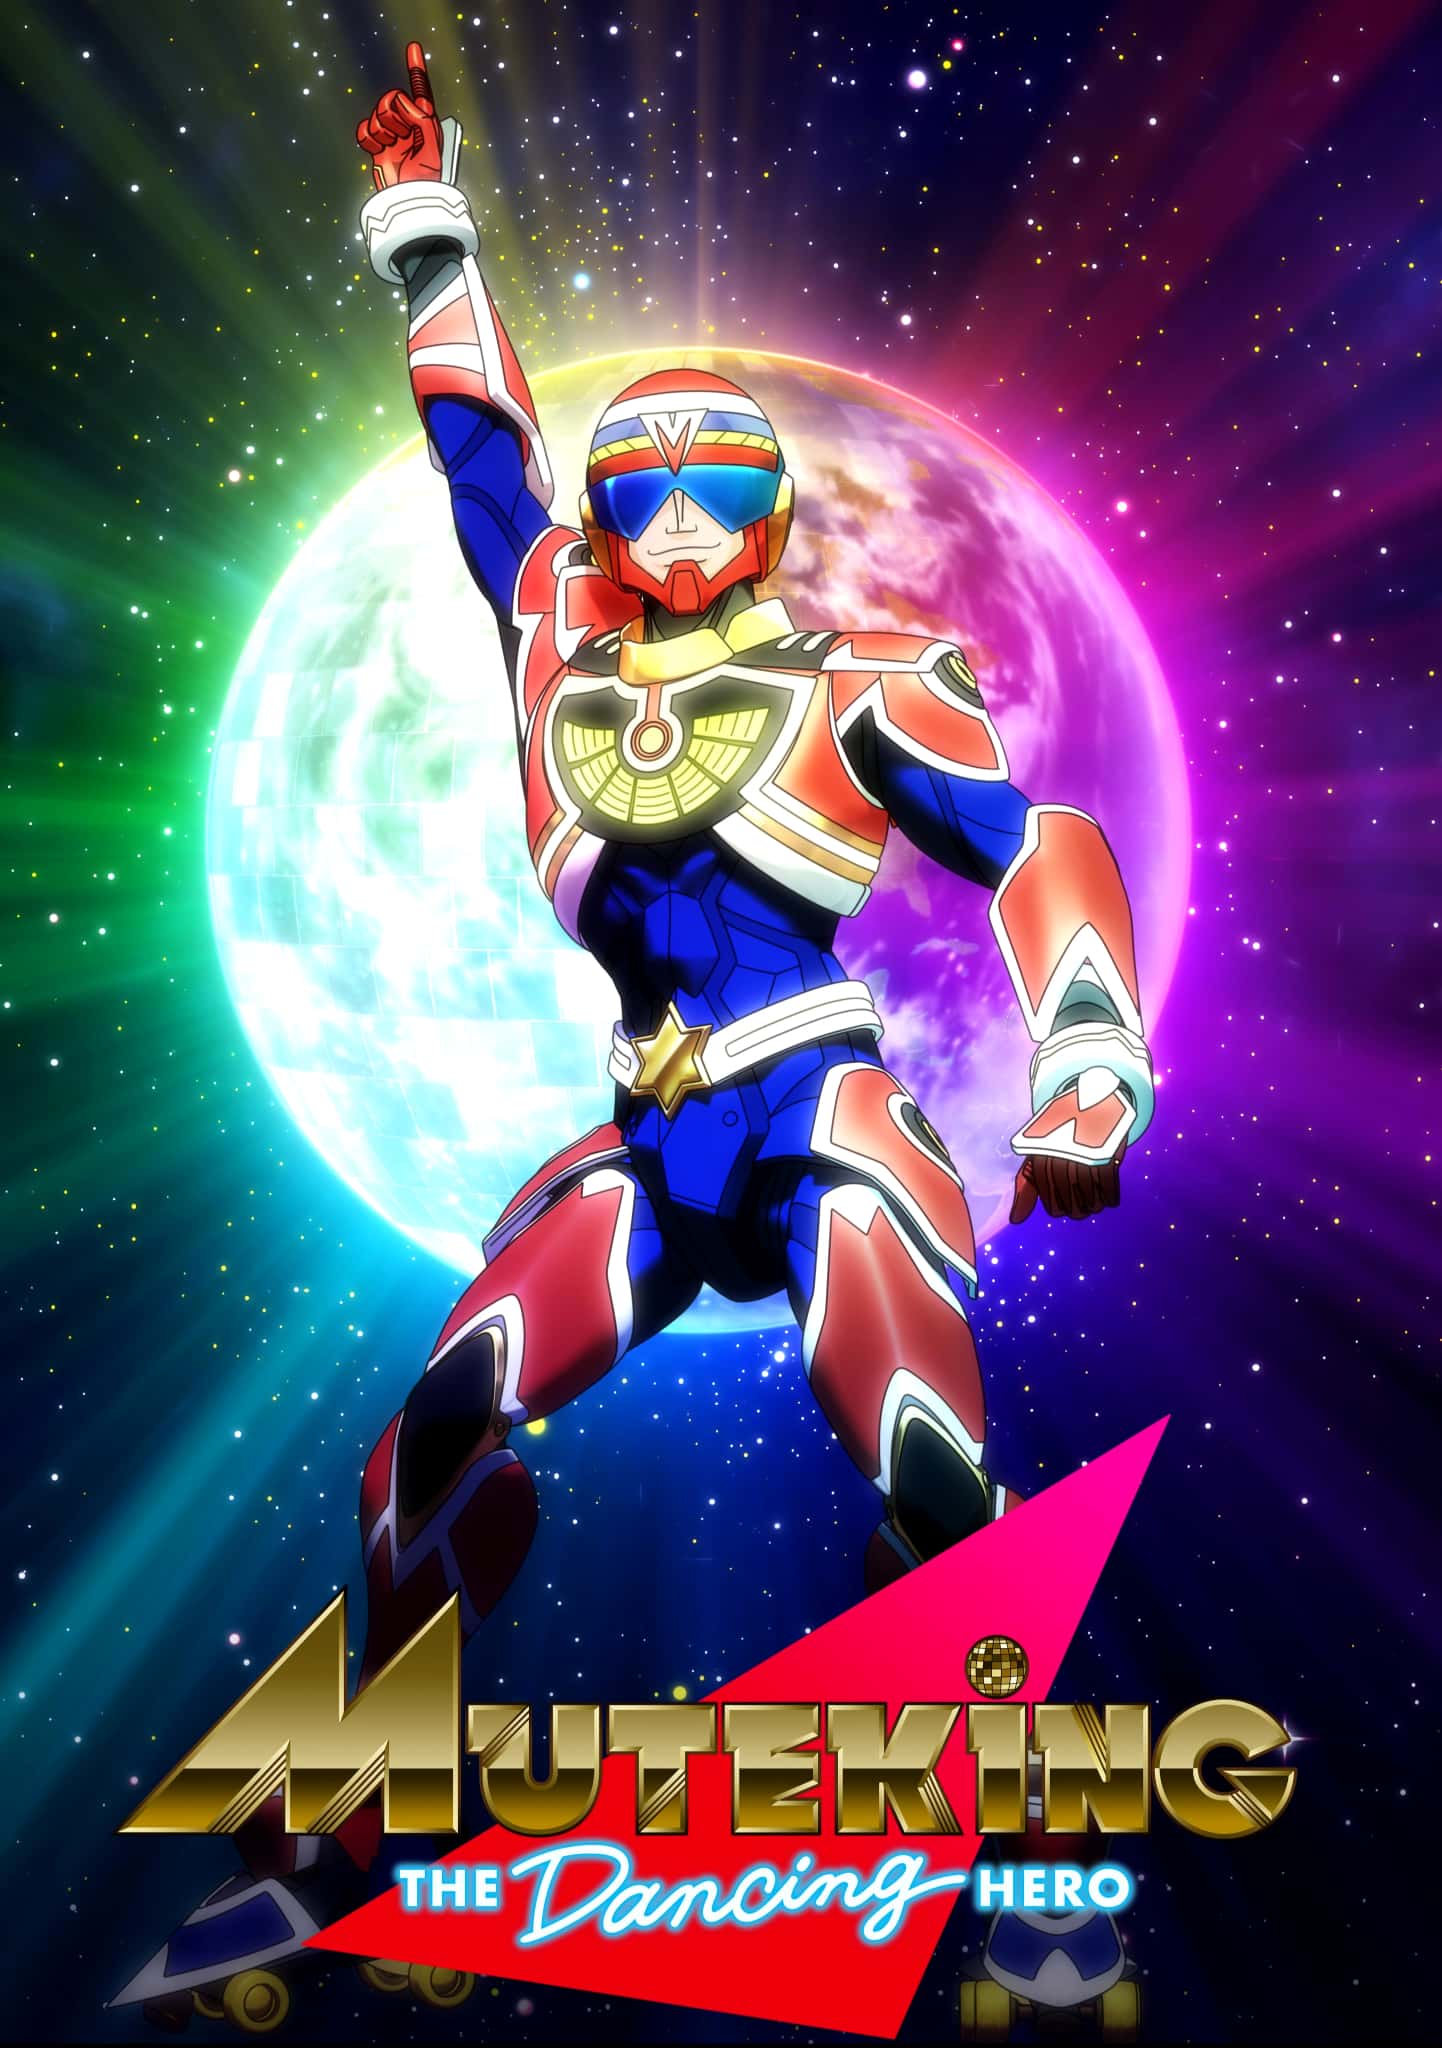 Annonce de MUTEKING THE Dancing HERO parmi les animes de lautomne 2021